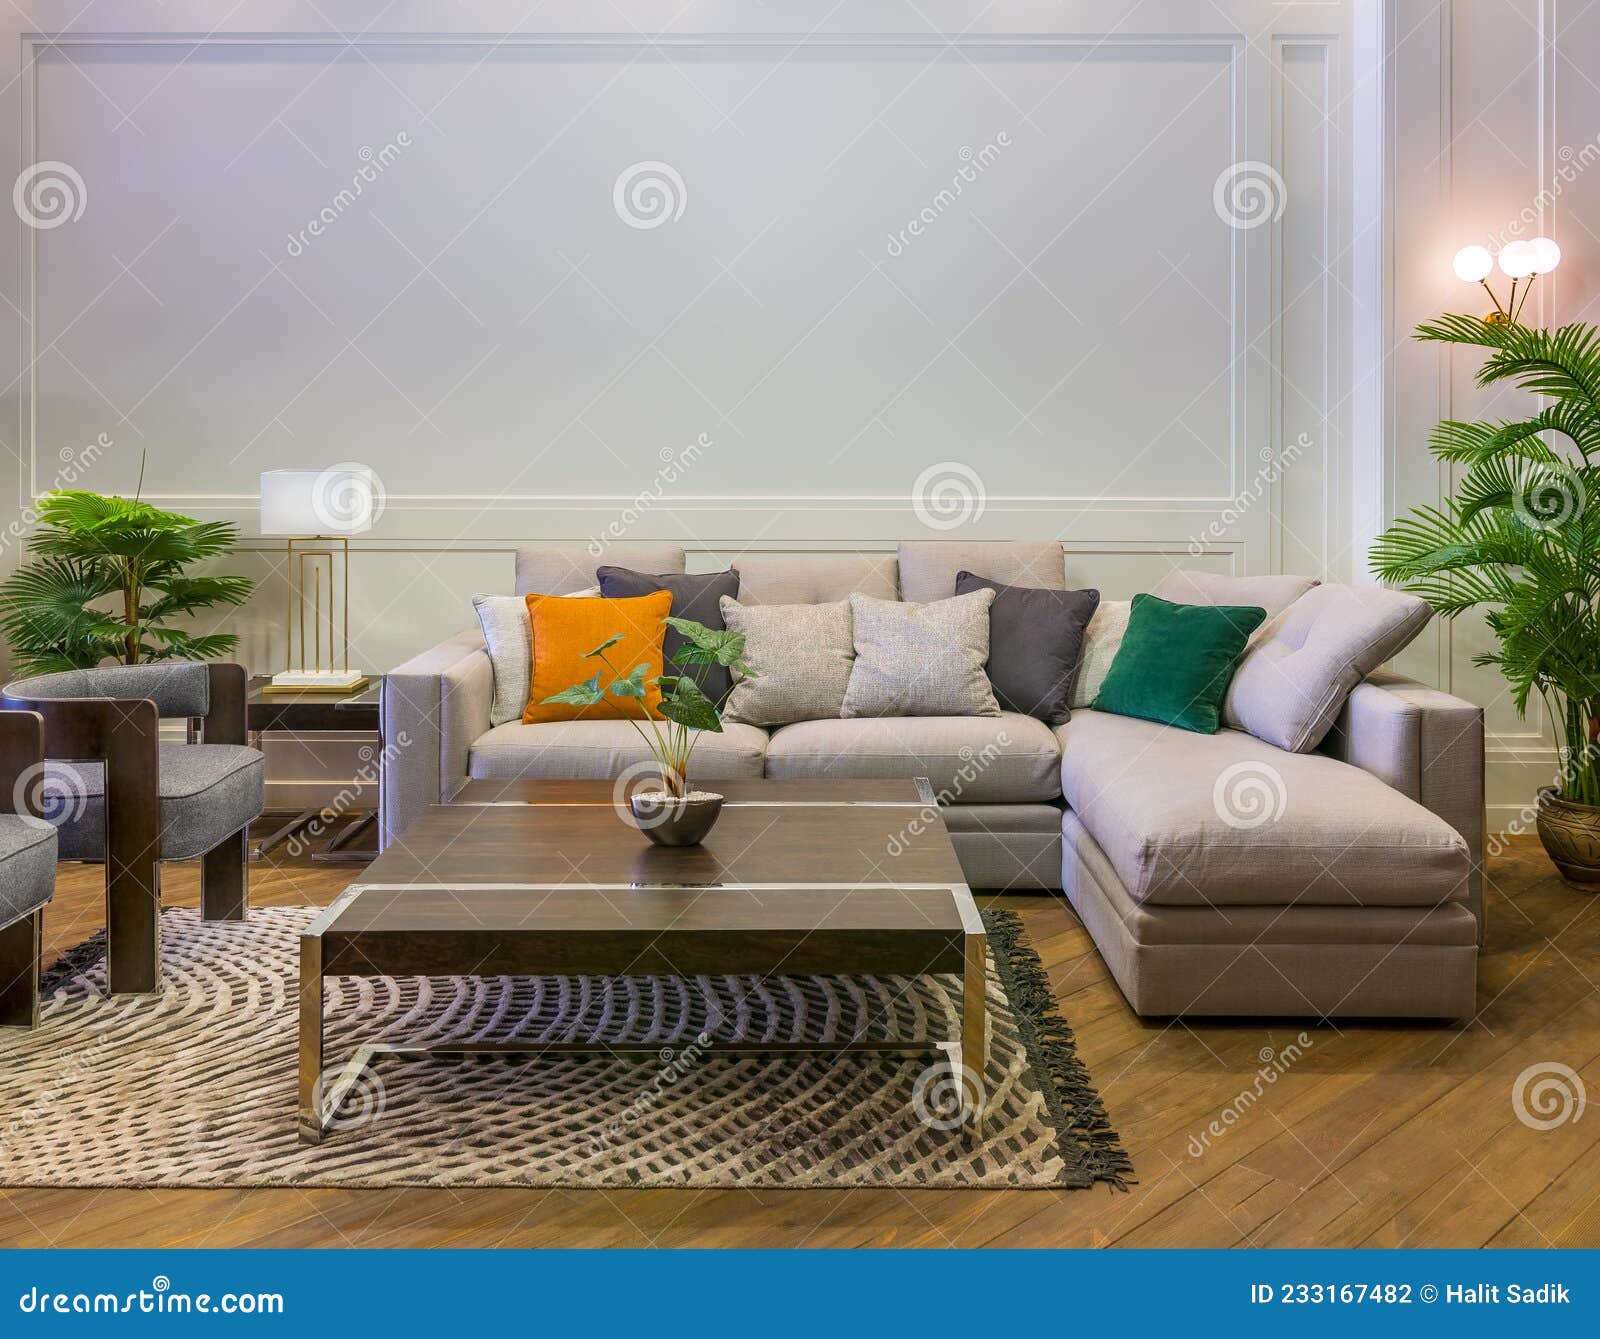 Sala de estar moderna, sofá con cojines coloridos y maqueta de dos marcos